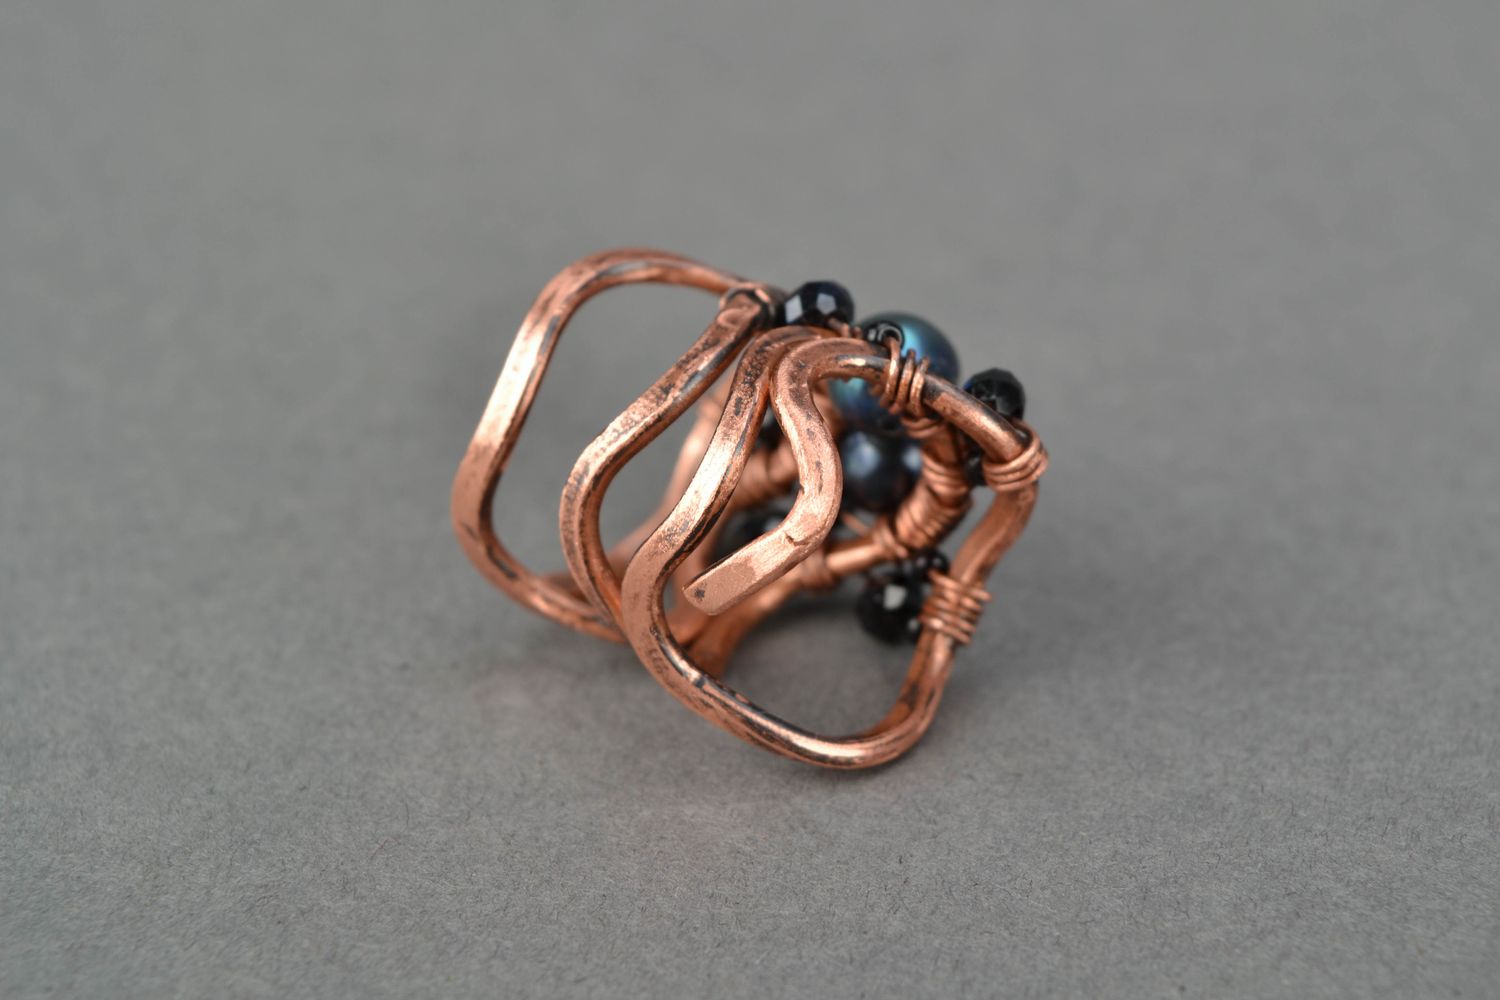 Кольцо в технике wire wrap медное с искусственным жемчугом черного цвета фото 4